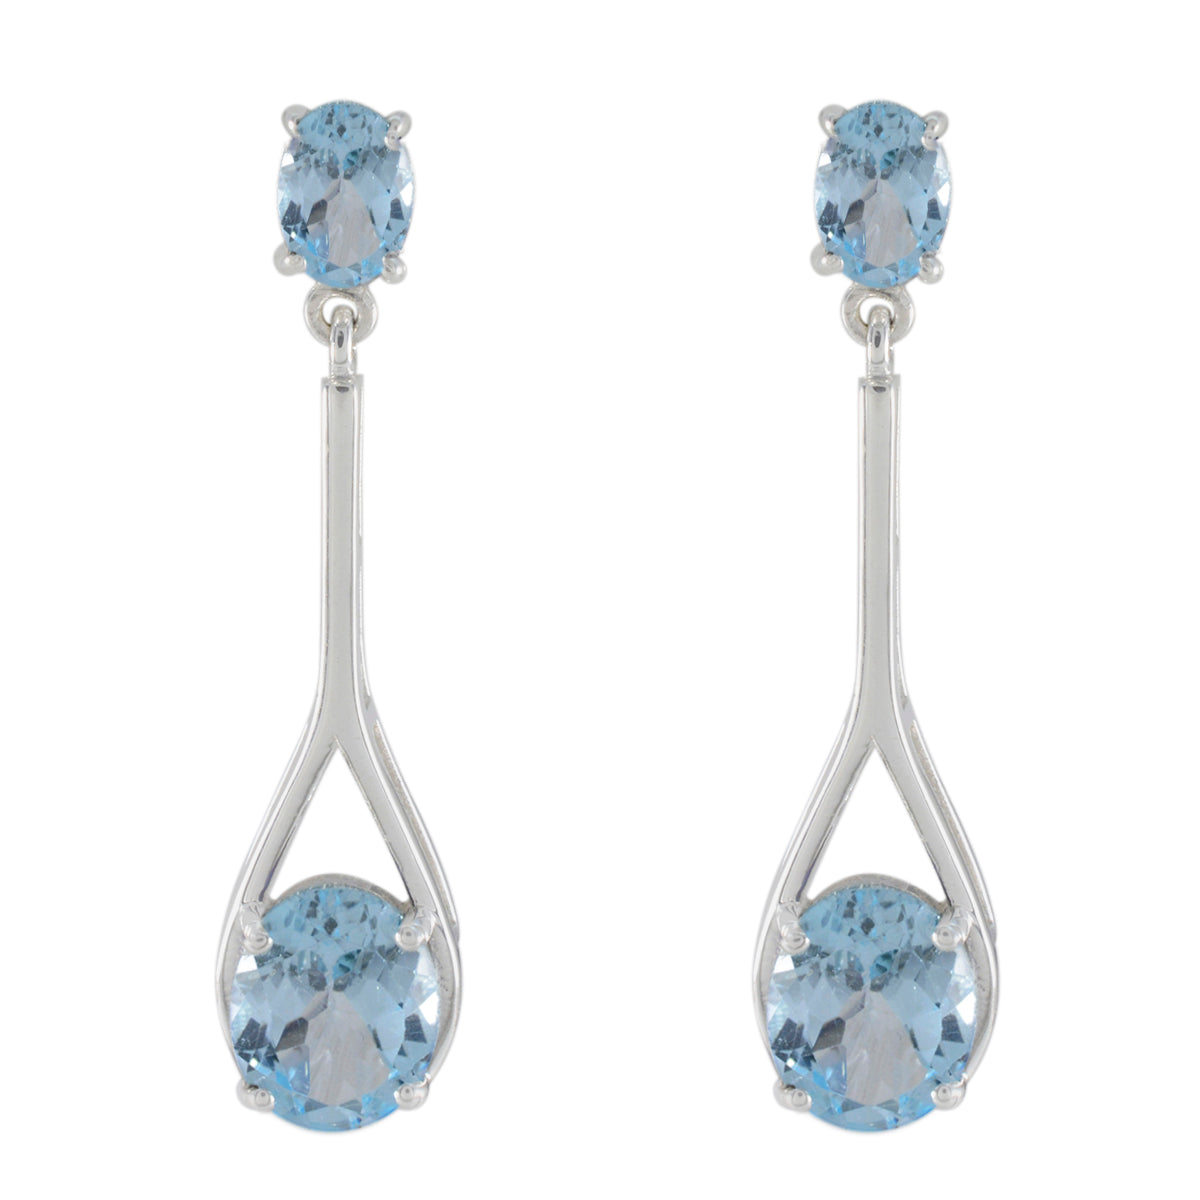 Riyo Beddable Sterling Silber Ohrring für Mädchen, blauer Topas-Ohrring, Lünettenfassung, blauer Ohrring, Ohrstecker